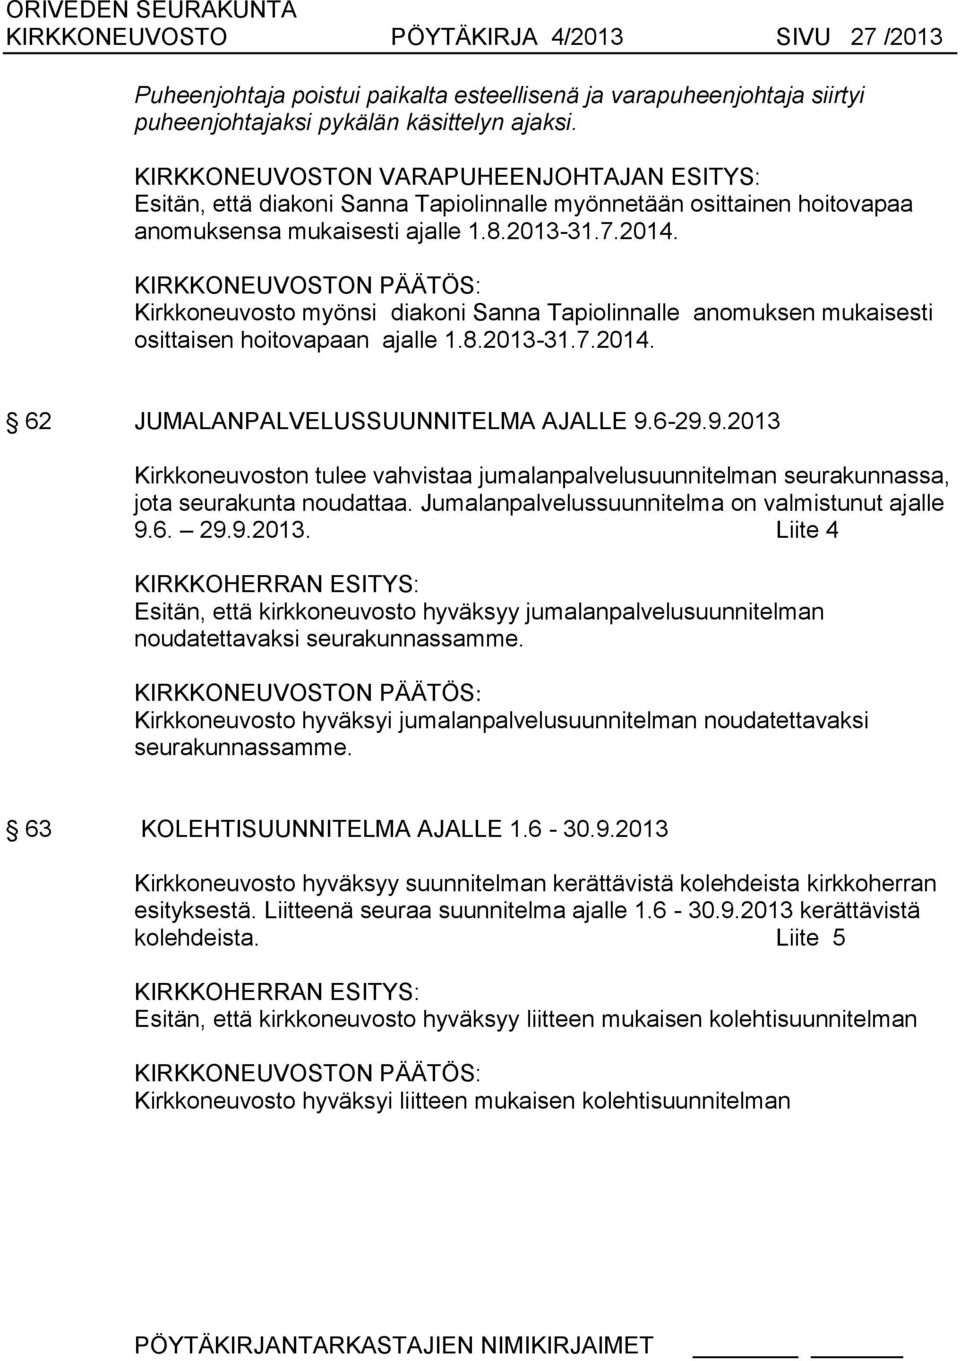 KIRKKONEUVOSTON : Kirkkoneuvosto myönsi diakoni Sanna Tapiolinnalle anomuksen mukaisesti osittaisen hoitovapaan ajalle 1.8.2013-31.7.2014. 62 JUMALANPALVELUSSUUNNITELMA AJALLE 9.